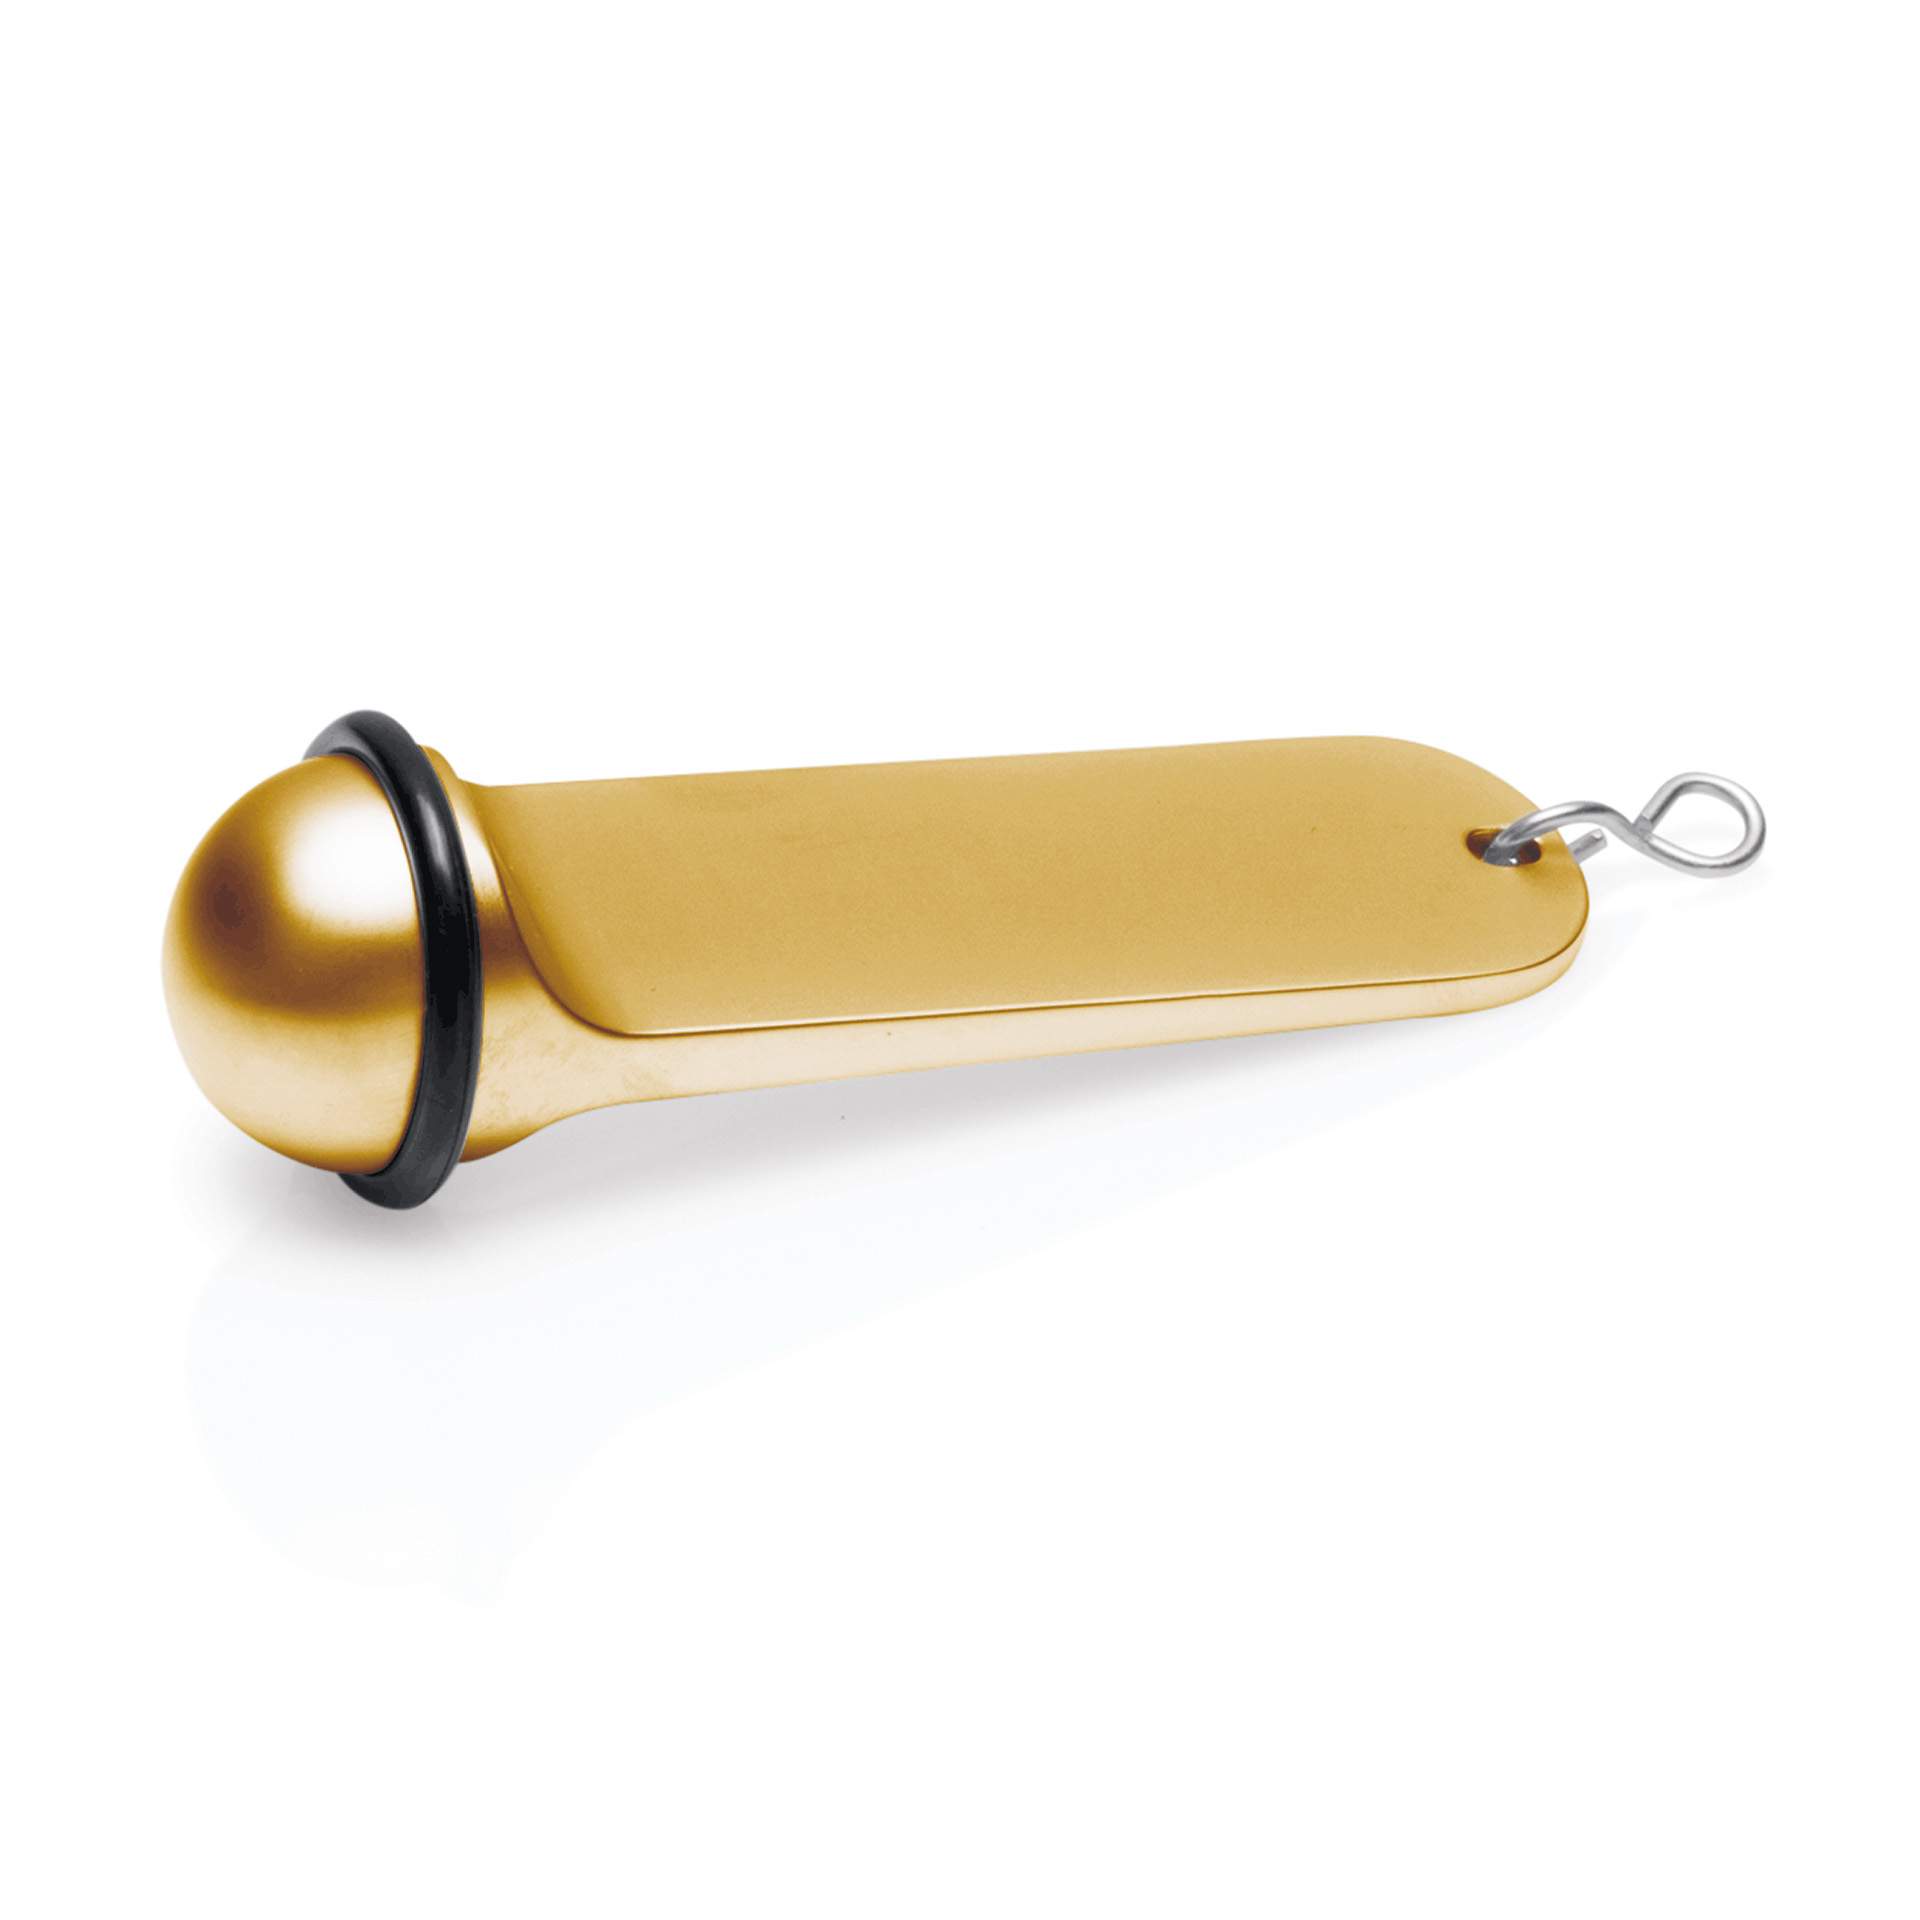 Schlüsselanhänger - ohne Gravur - gold - Abm. 3 x 11 cm - Zinkguss - 4318000-A